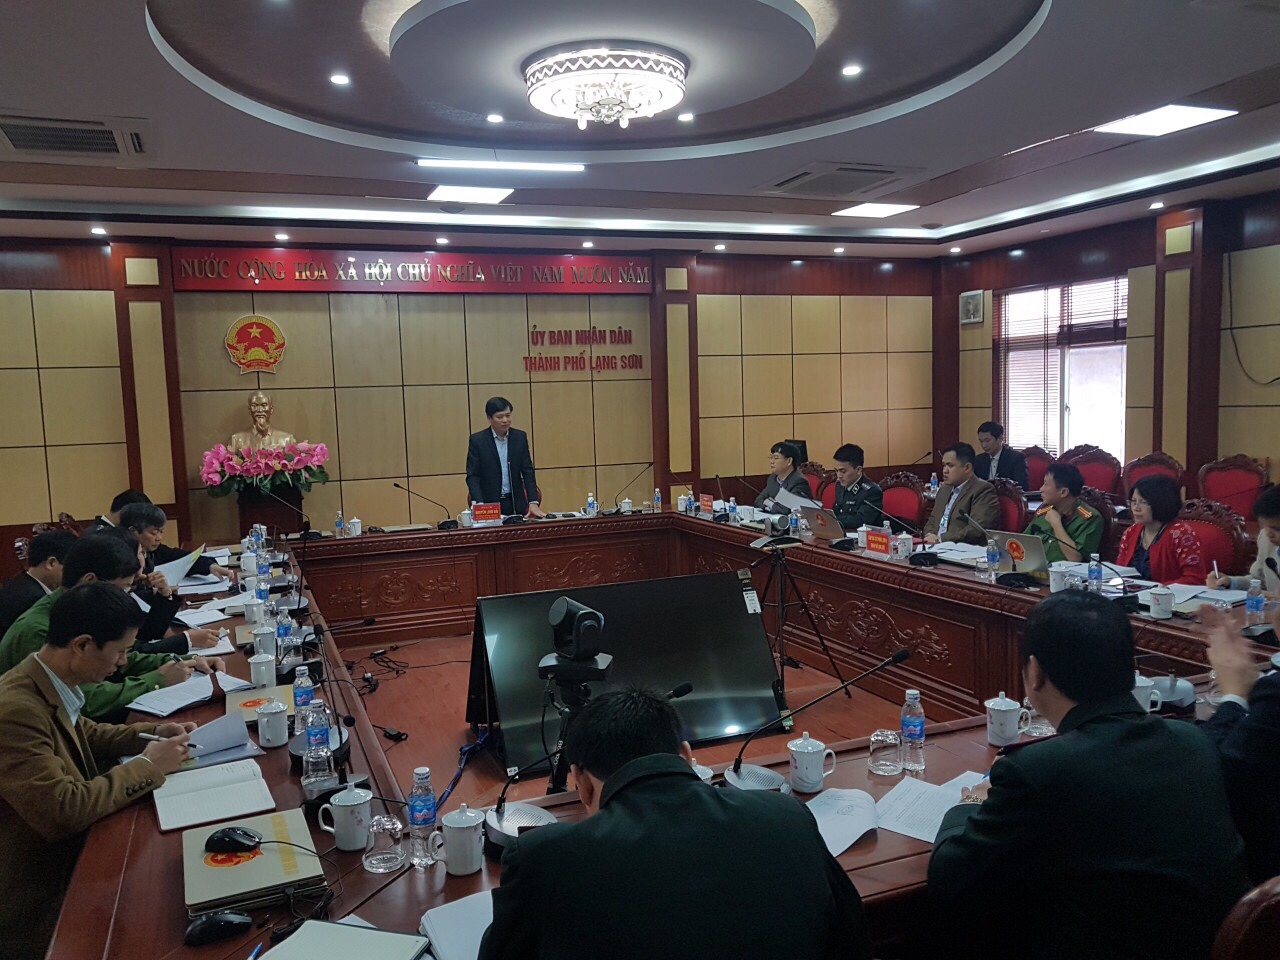 Lạng Sơn: Ban chỉ đạo THADS tỉnh kiểm tra công tác THADS thành phố, huyện Hữu Lũng